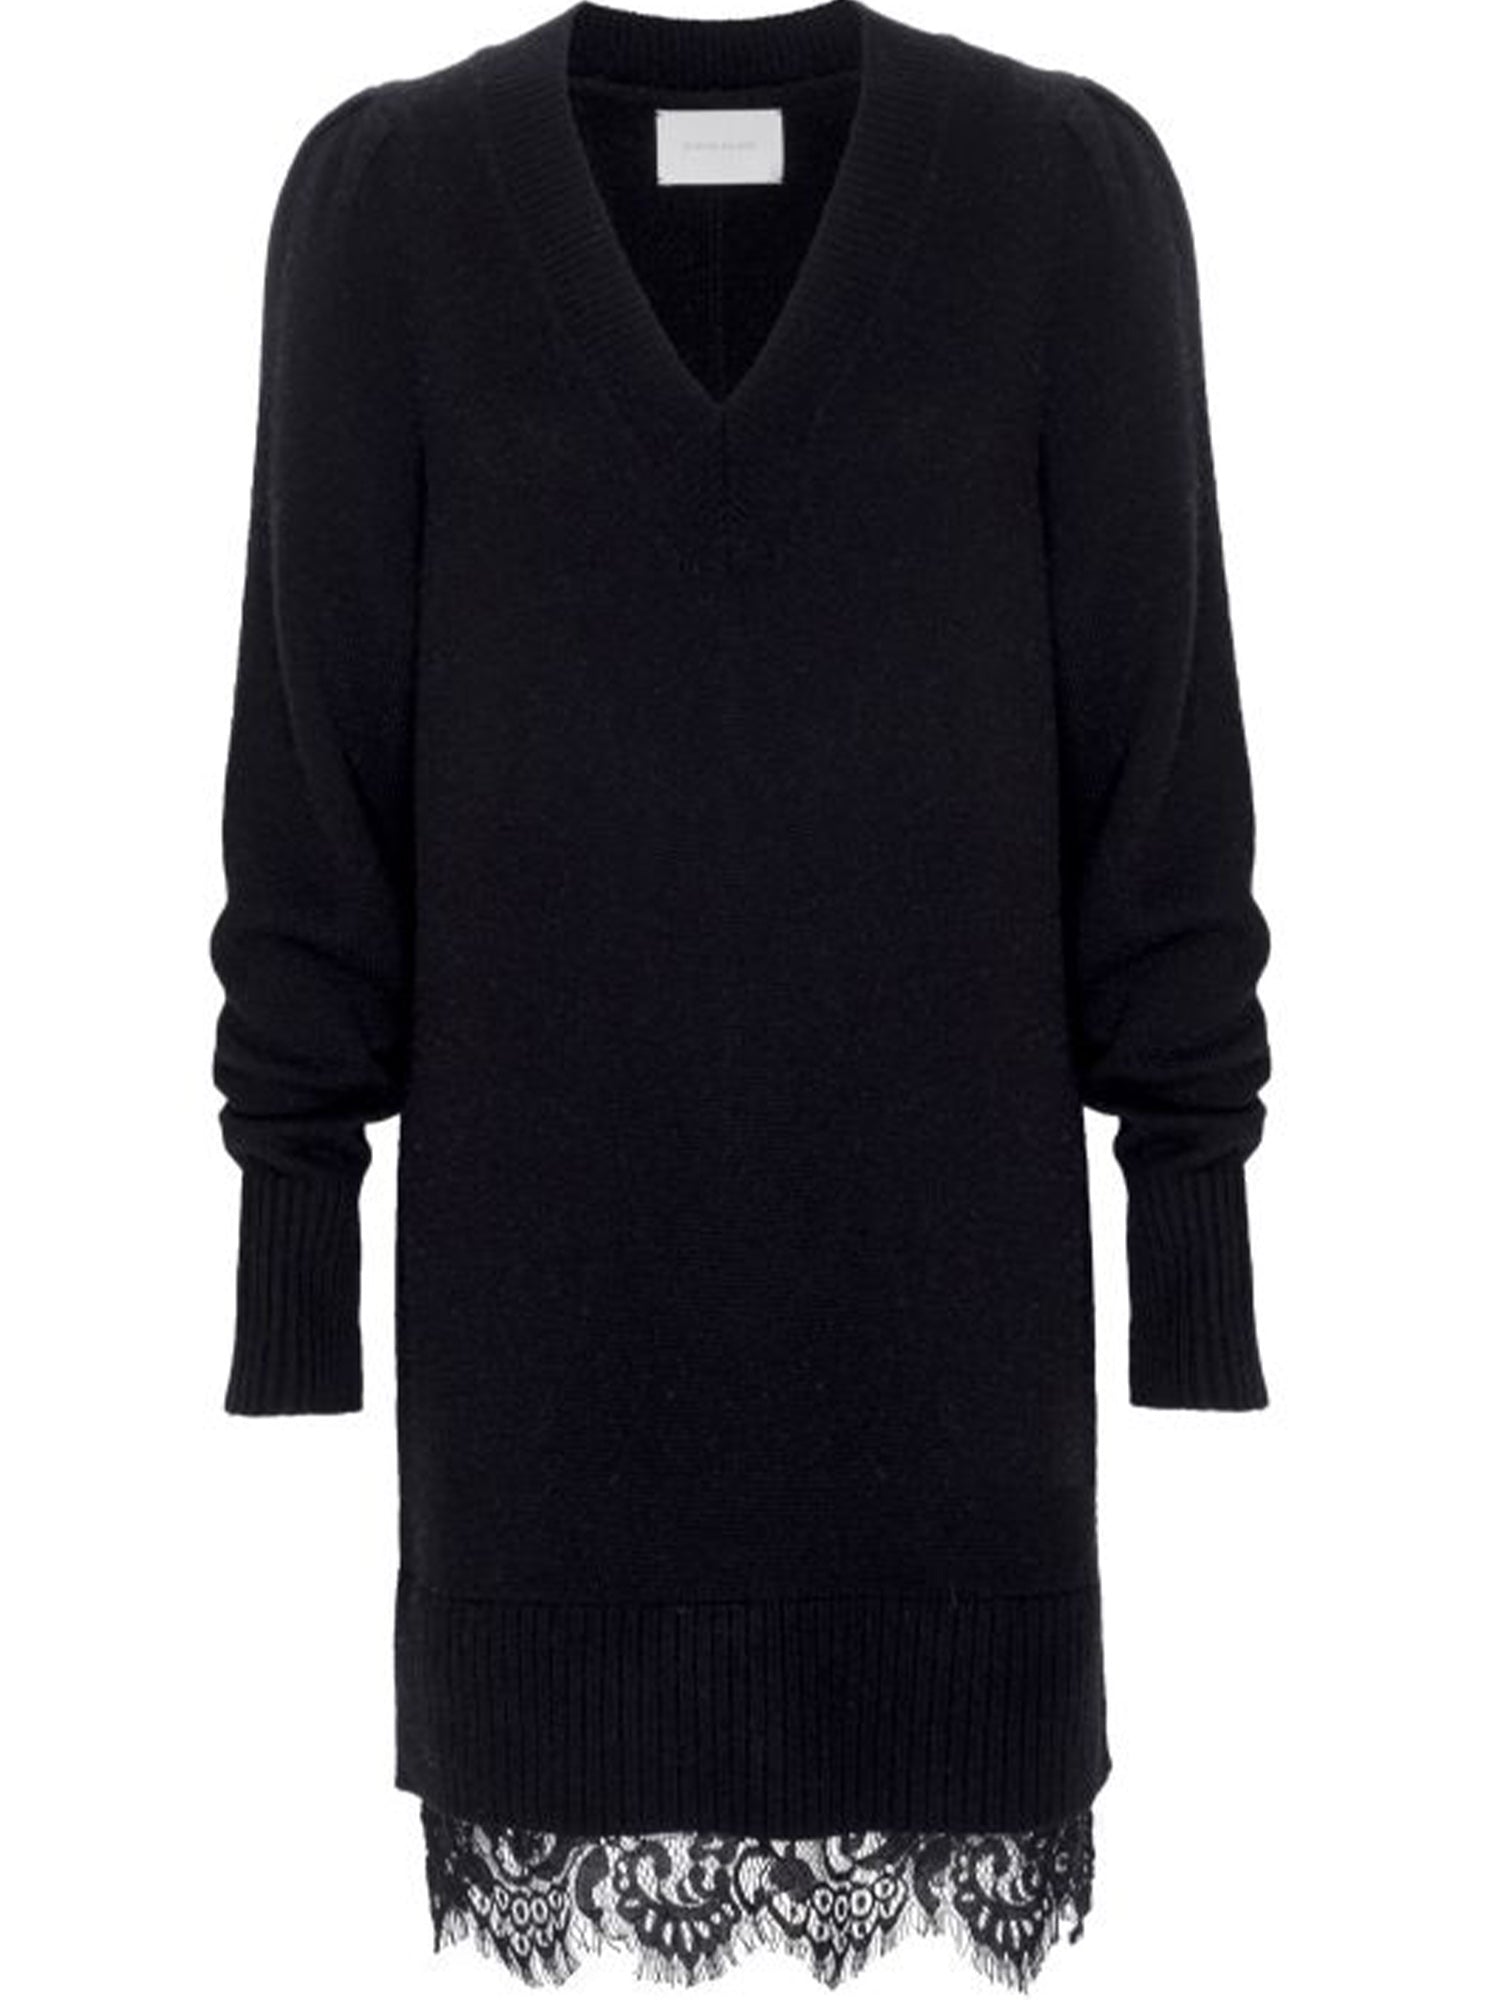 Women's Elisa Lace Looker Sweater Dress, Black